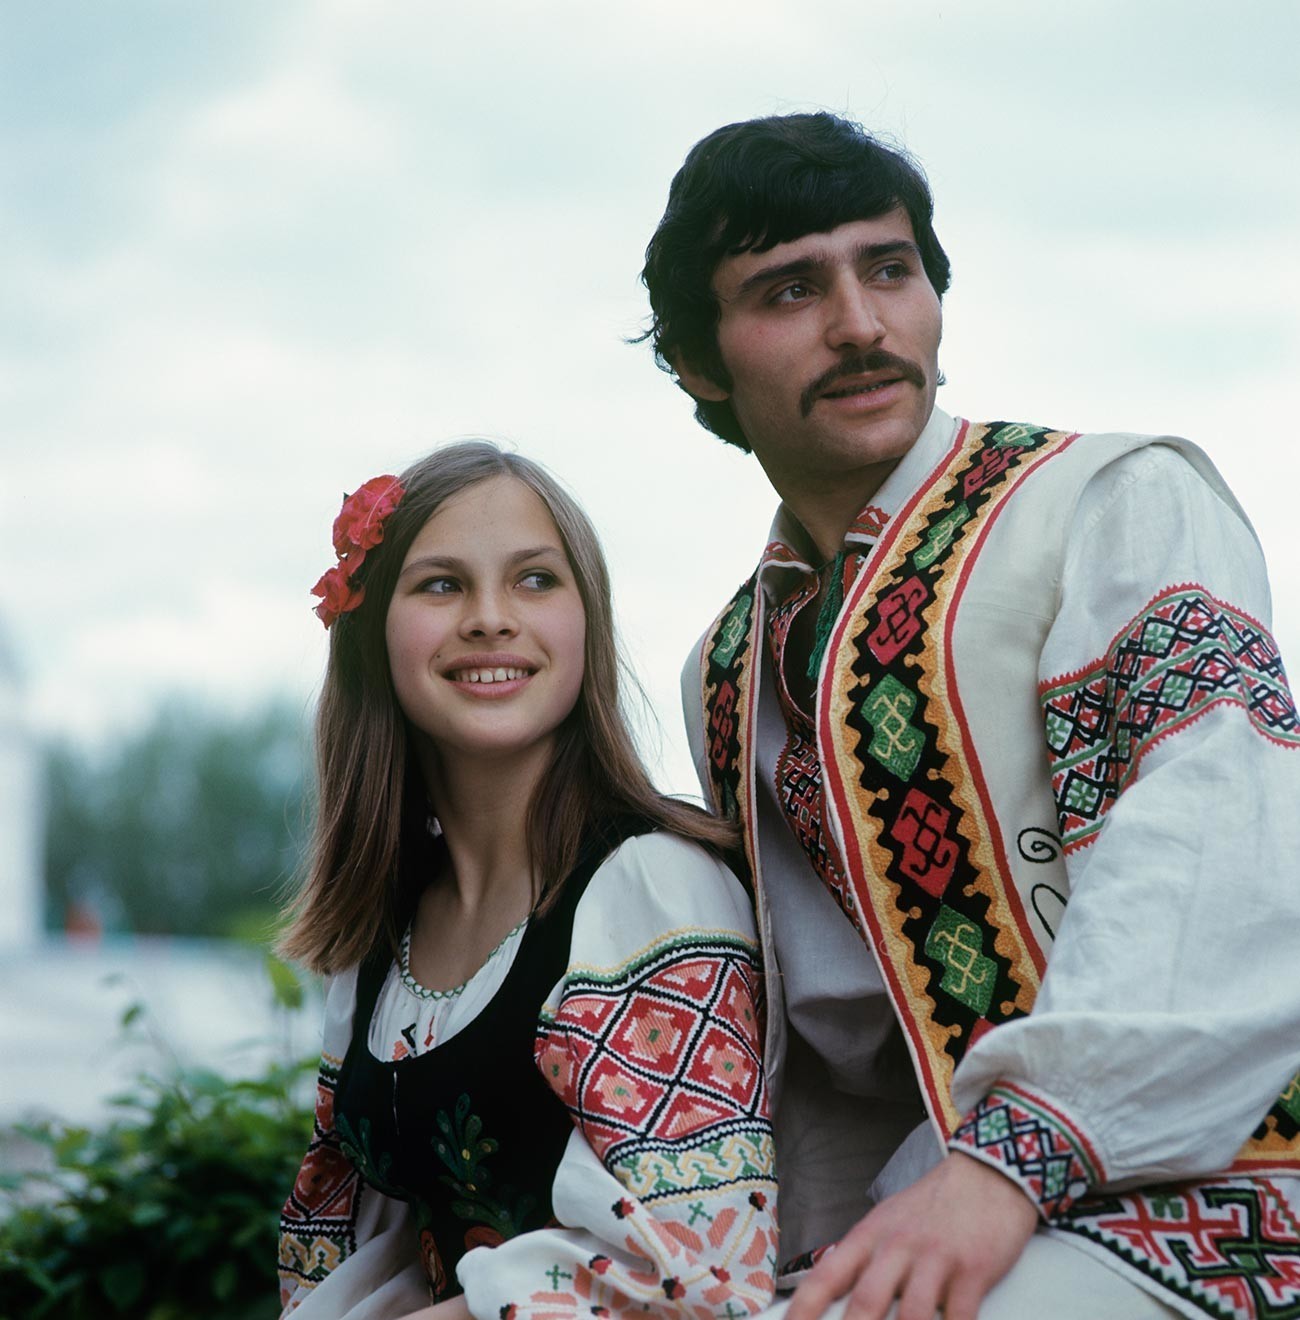 Člani ljudskega plesnega ansambla Moldavanesca, 1975

